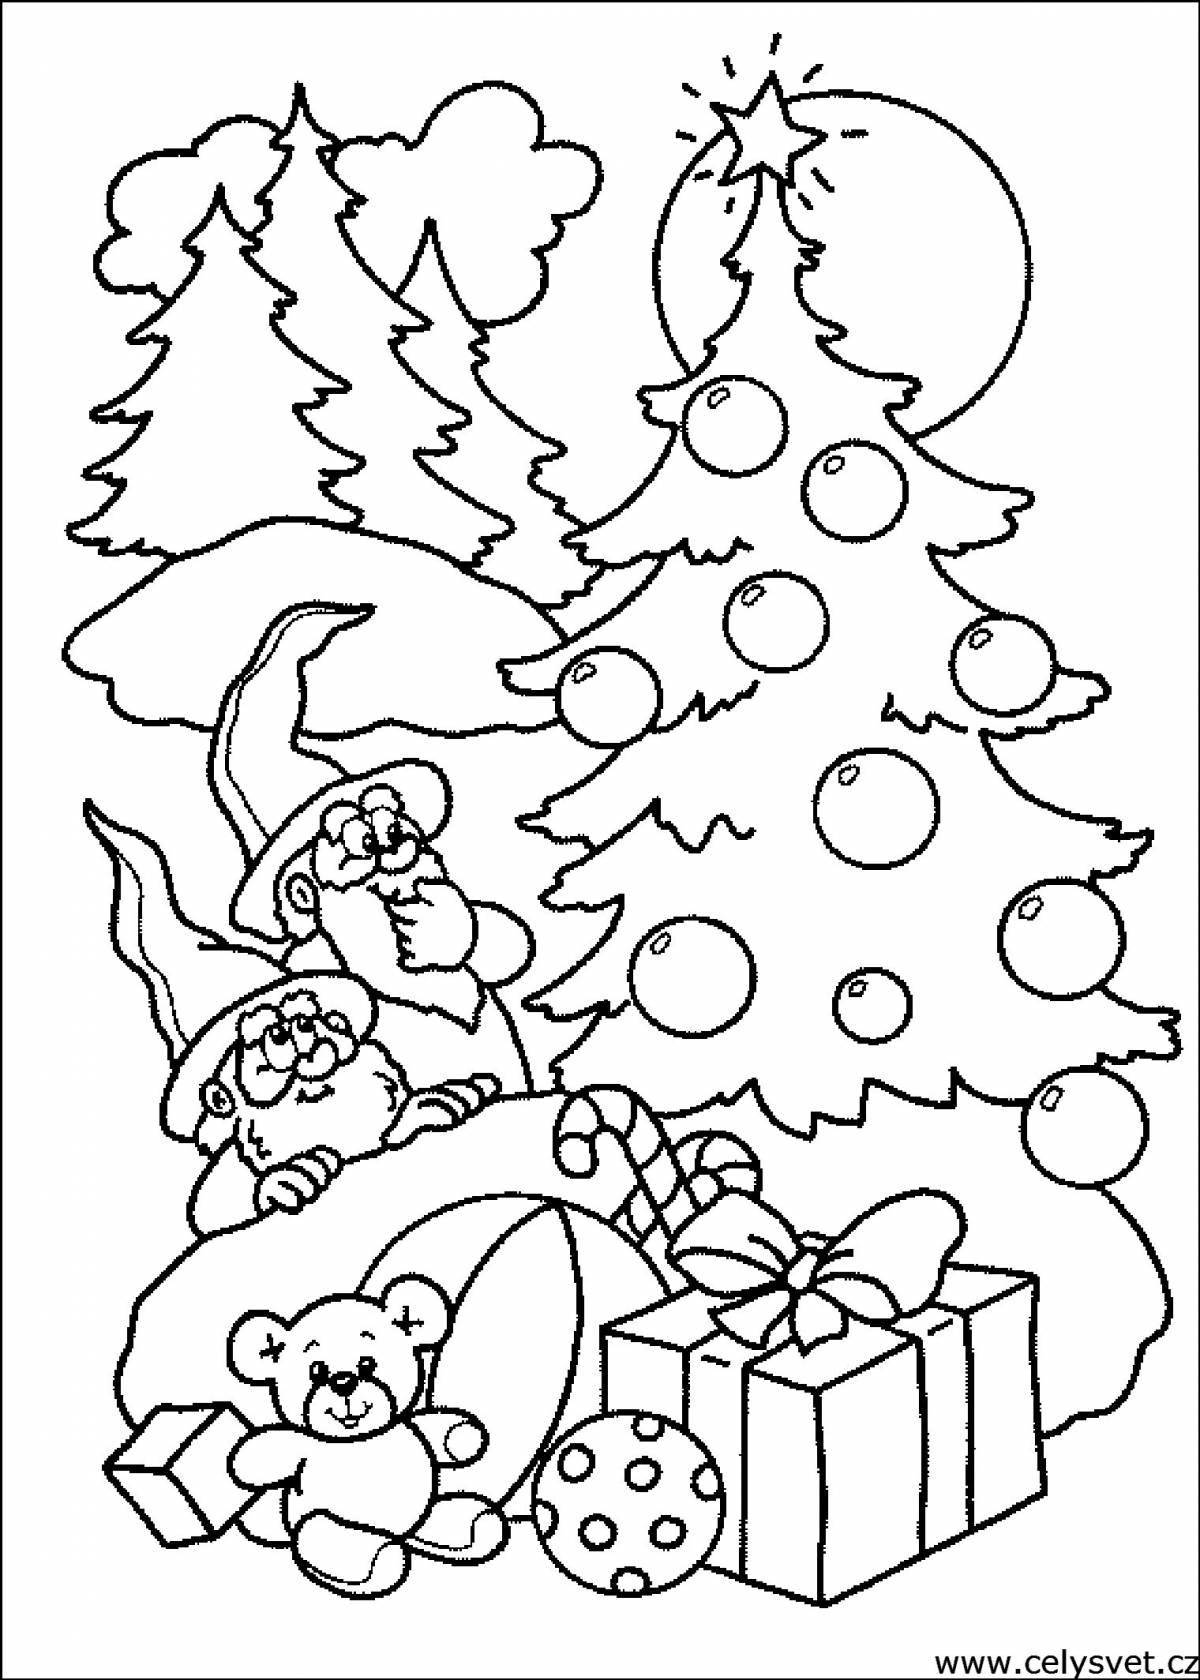 Праздничная новогодняя раскраска для детей 5-6 лет